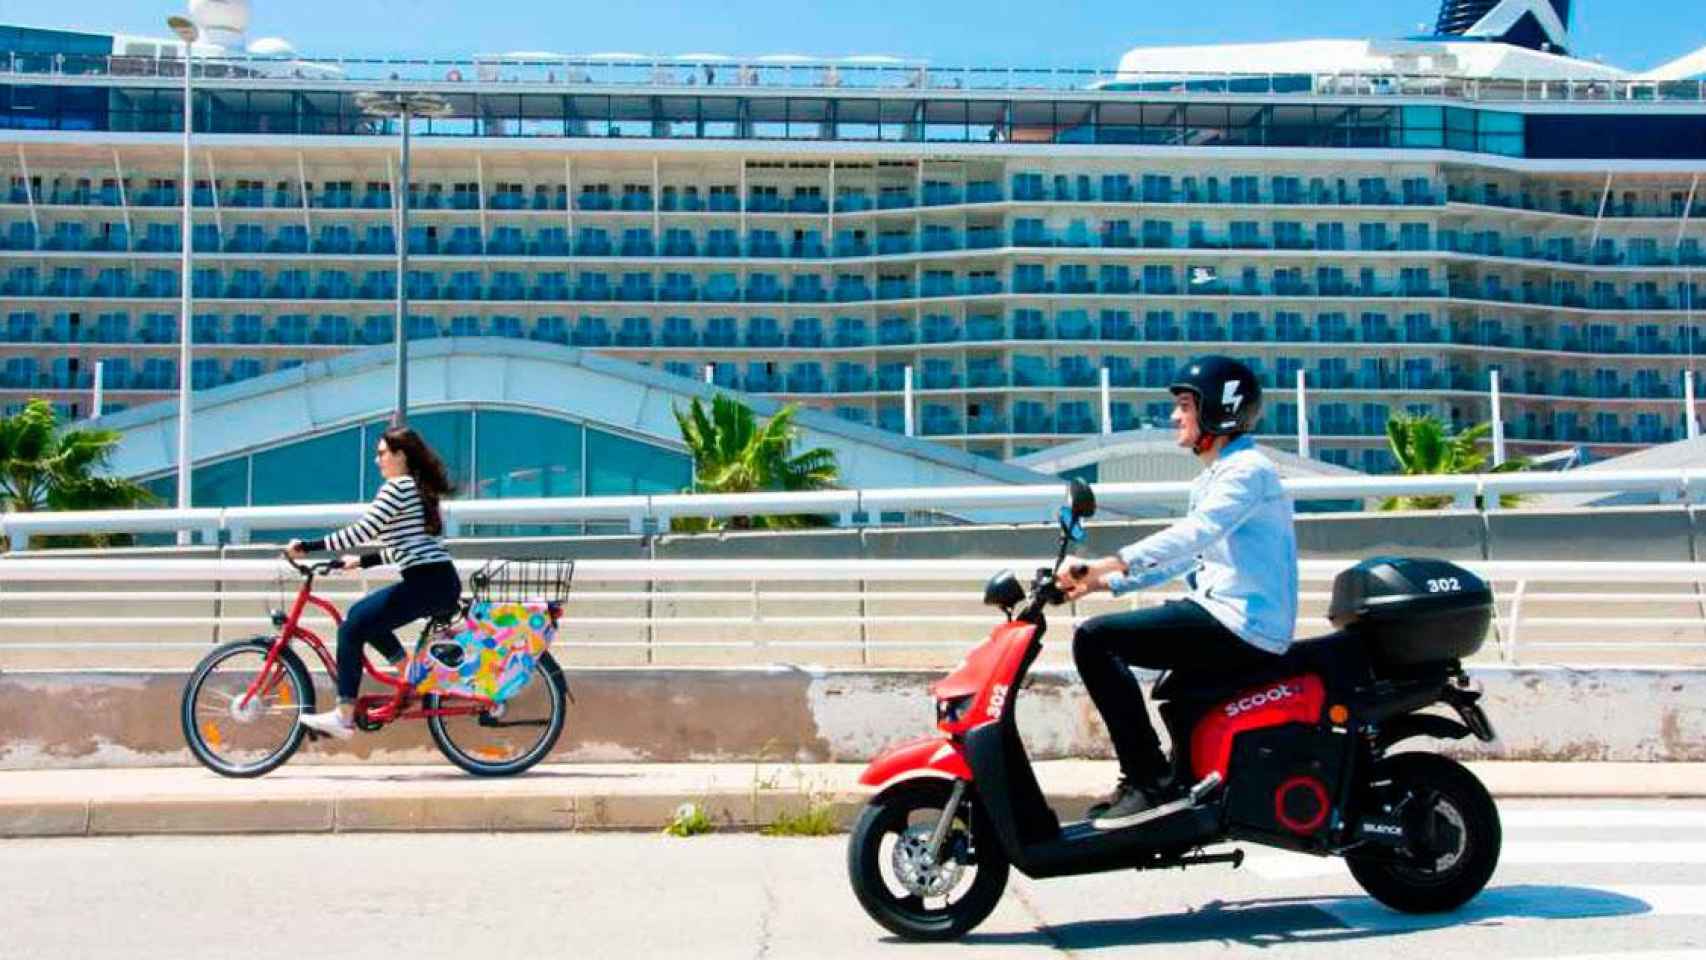 Imagen de una moto eléctrica y una bicicleta Scoot frente a un crucero en Barcelona / CG